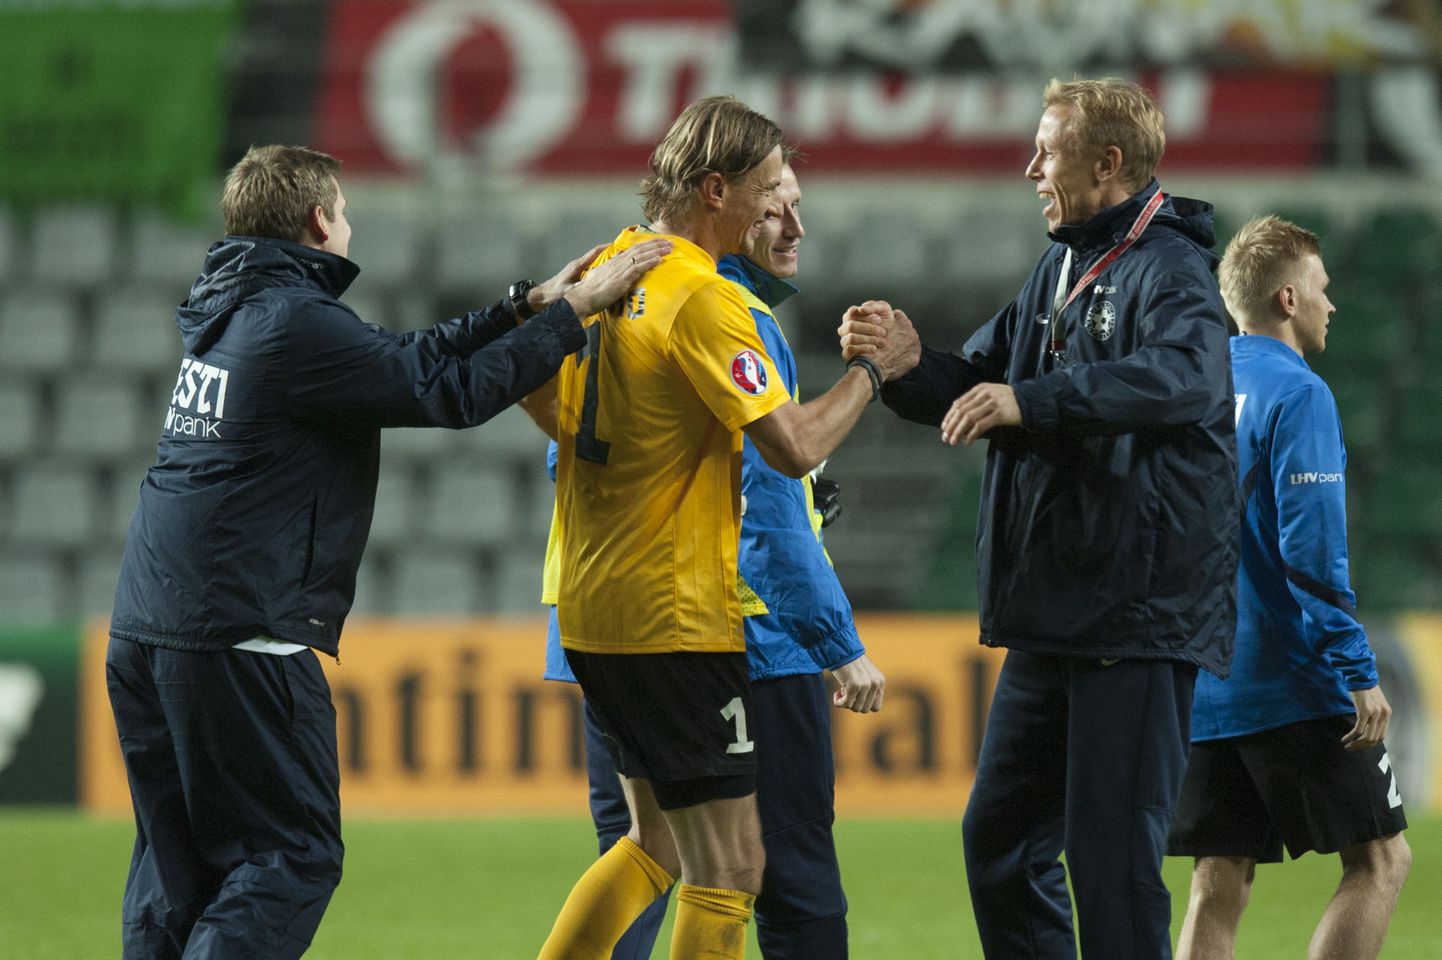 Сергей Парейко (в желтой футболке) во время матча сборной Эстонии.